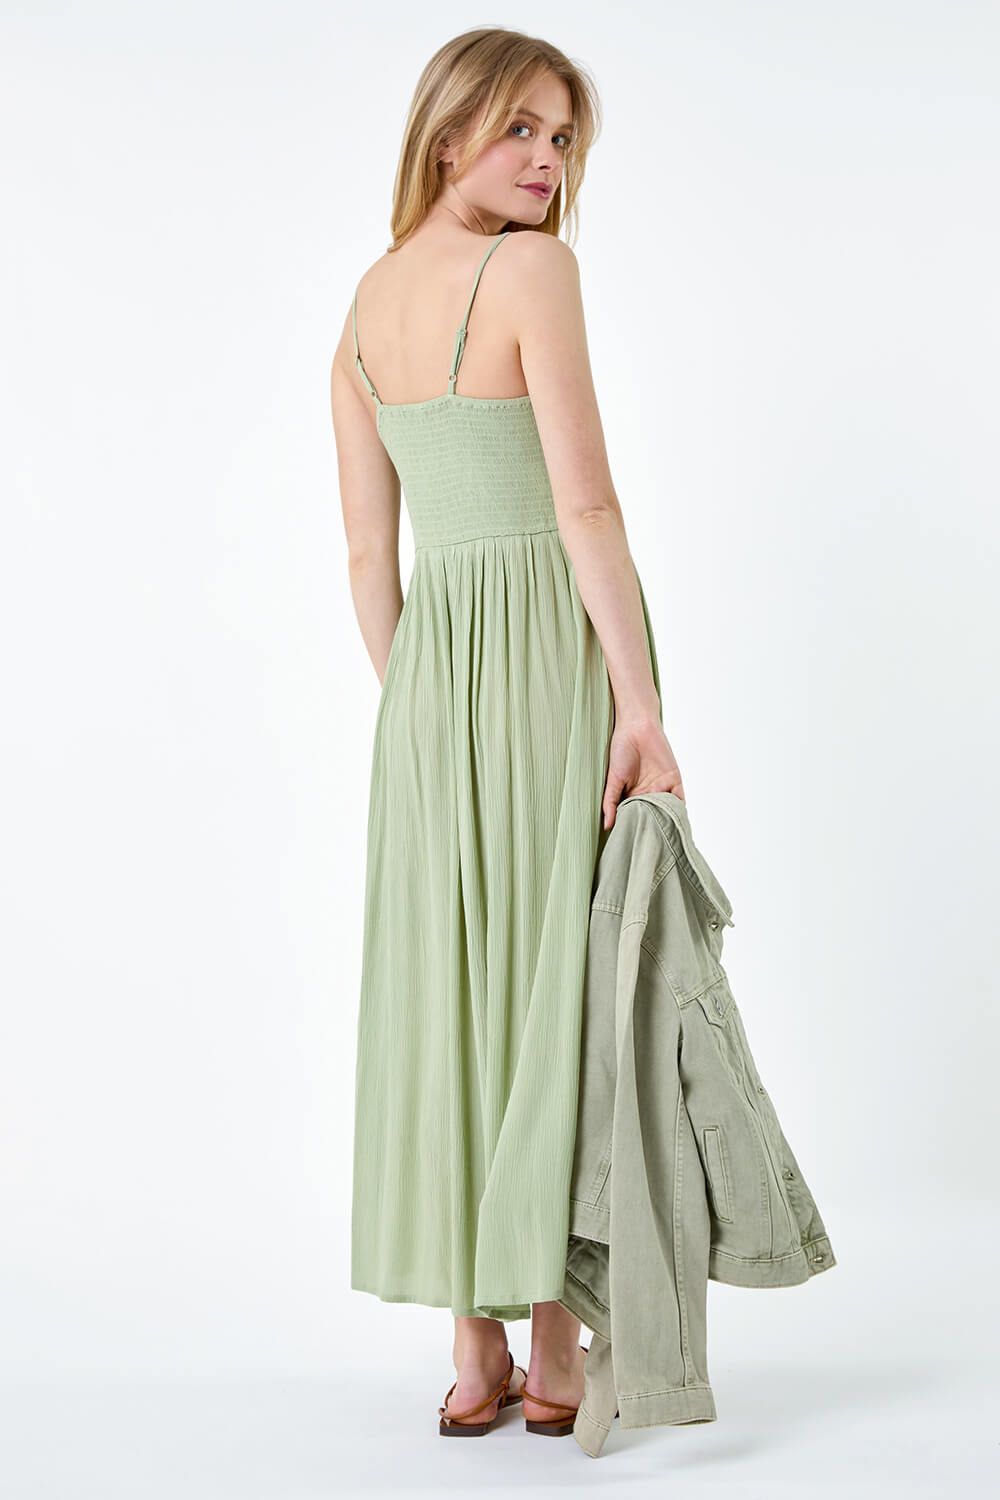 KHAKI Lace Bodice Shirred Midi Dress, Image 3 of 5